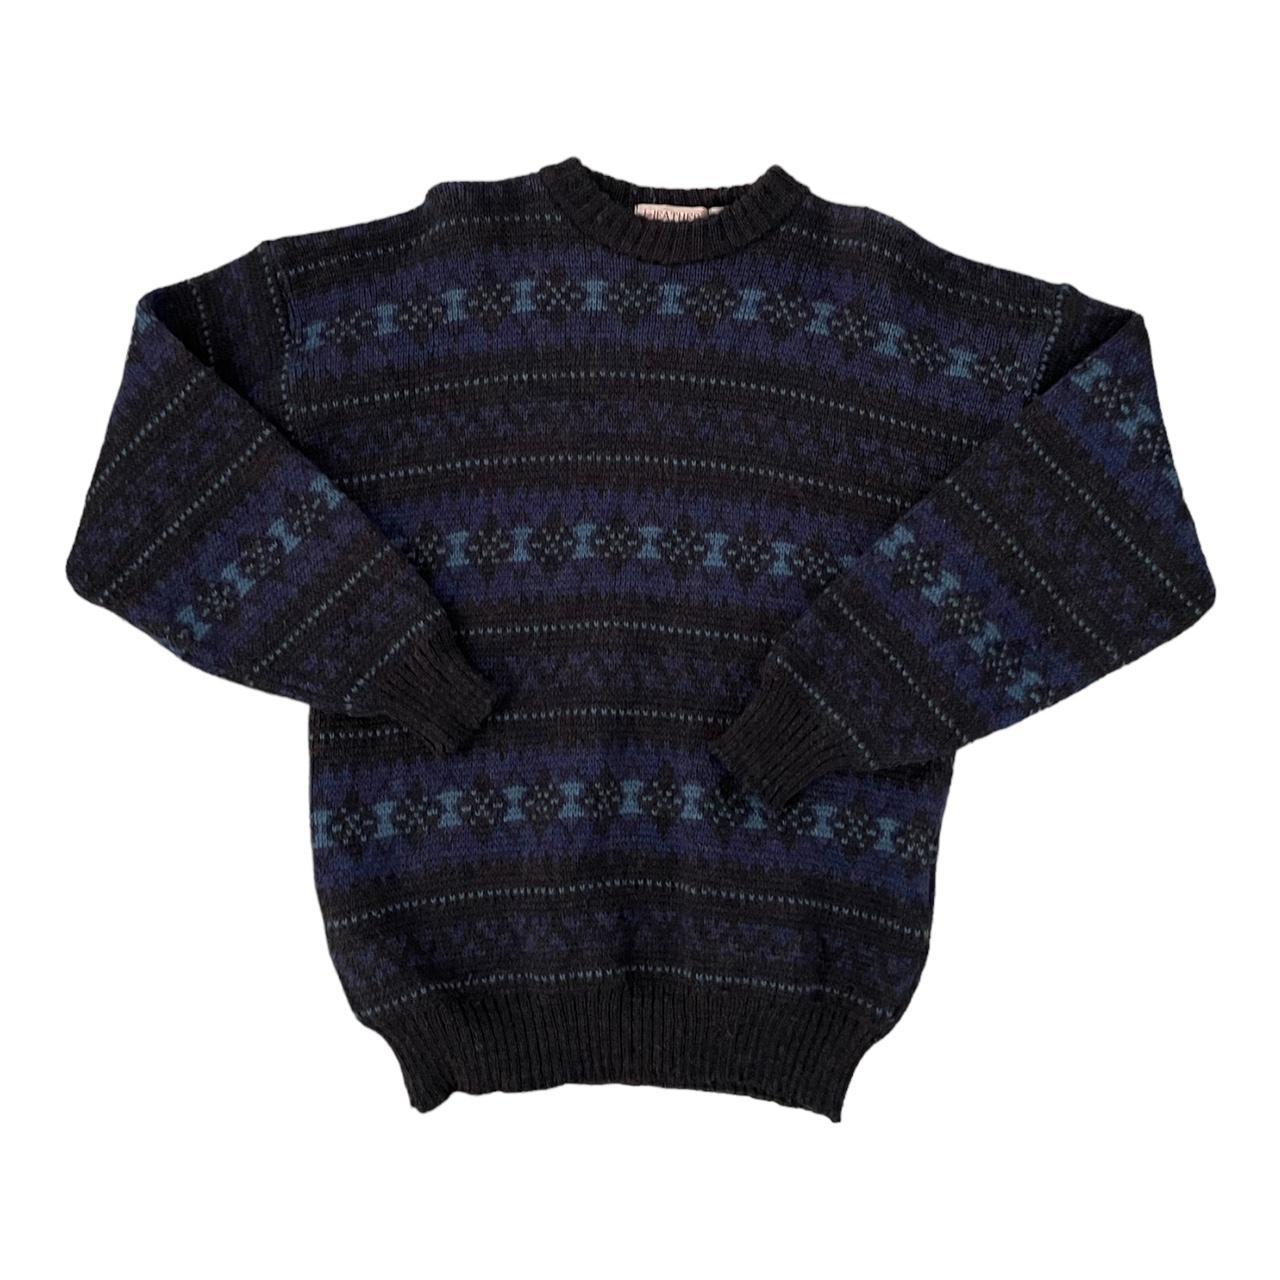 Vintage Heather Tweed Sweater Medium Mens 80s Blue... - Depop